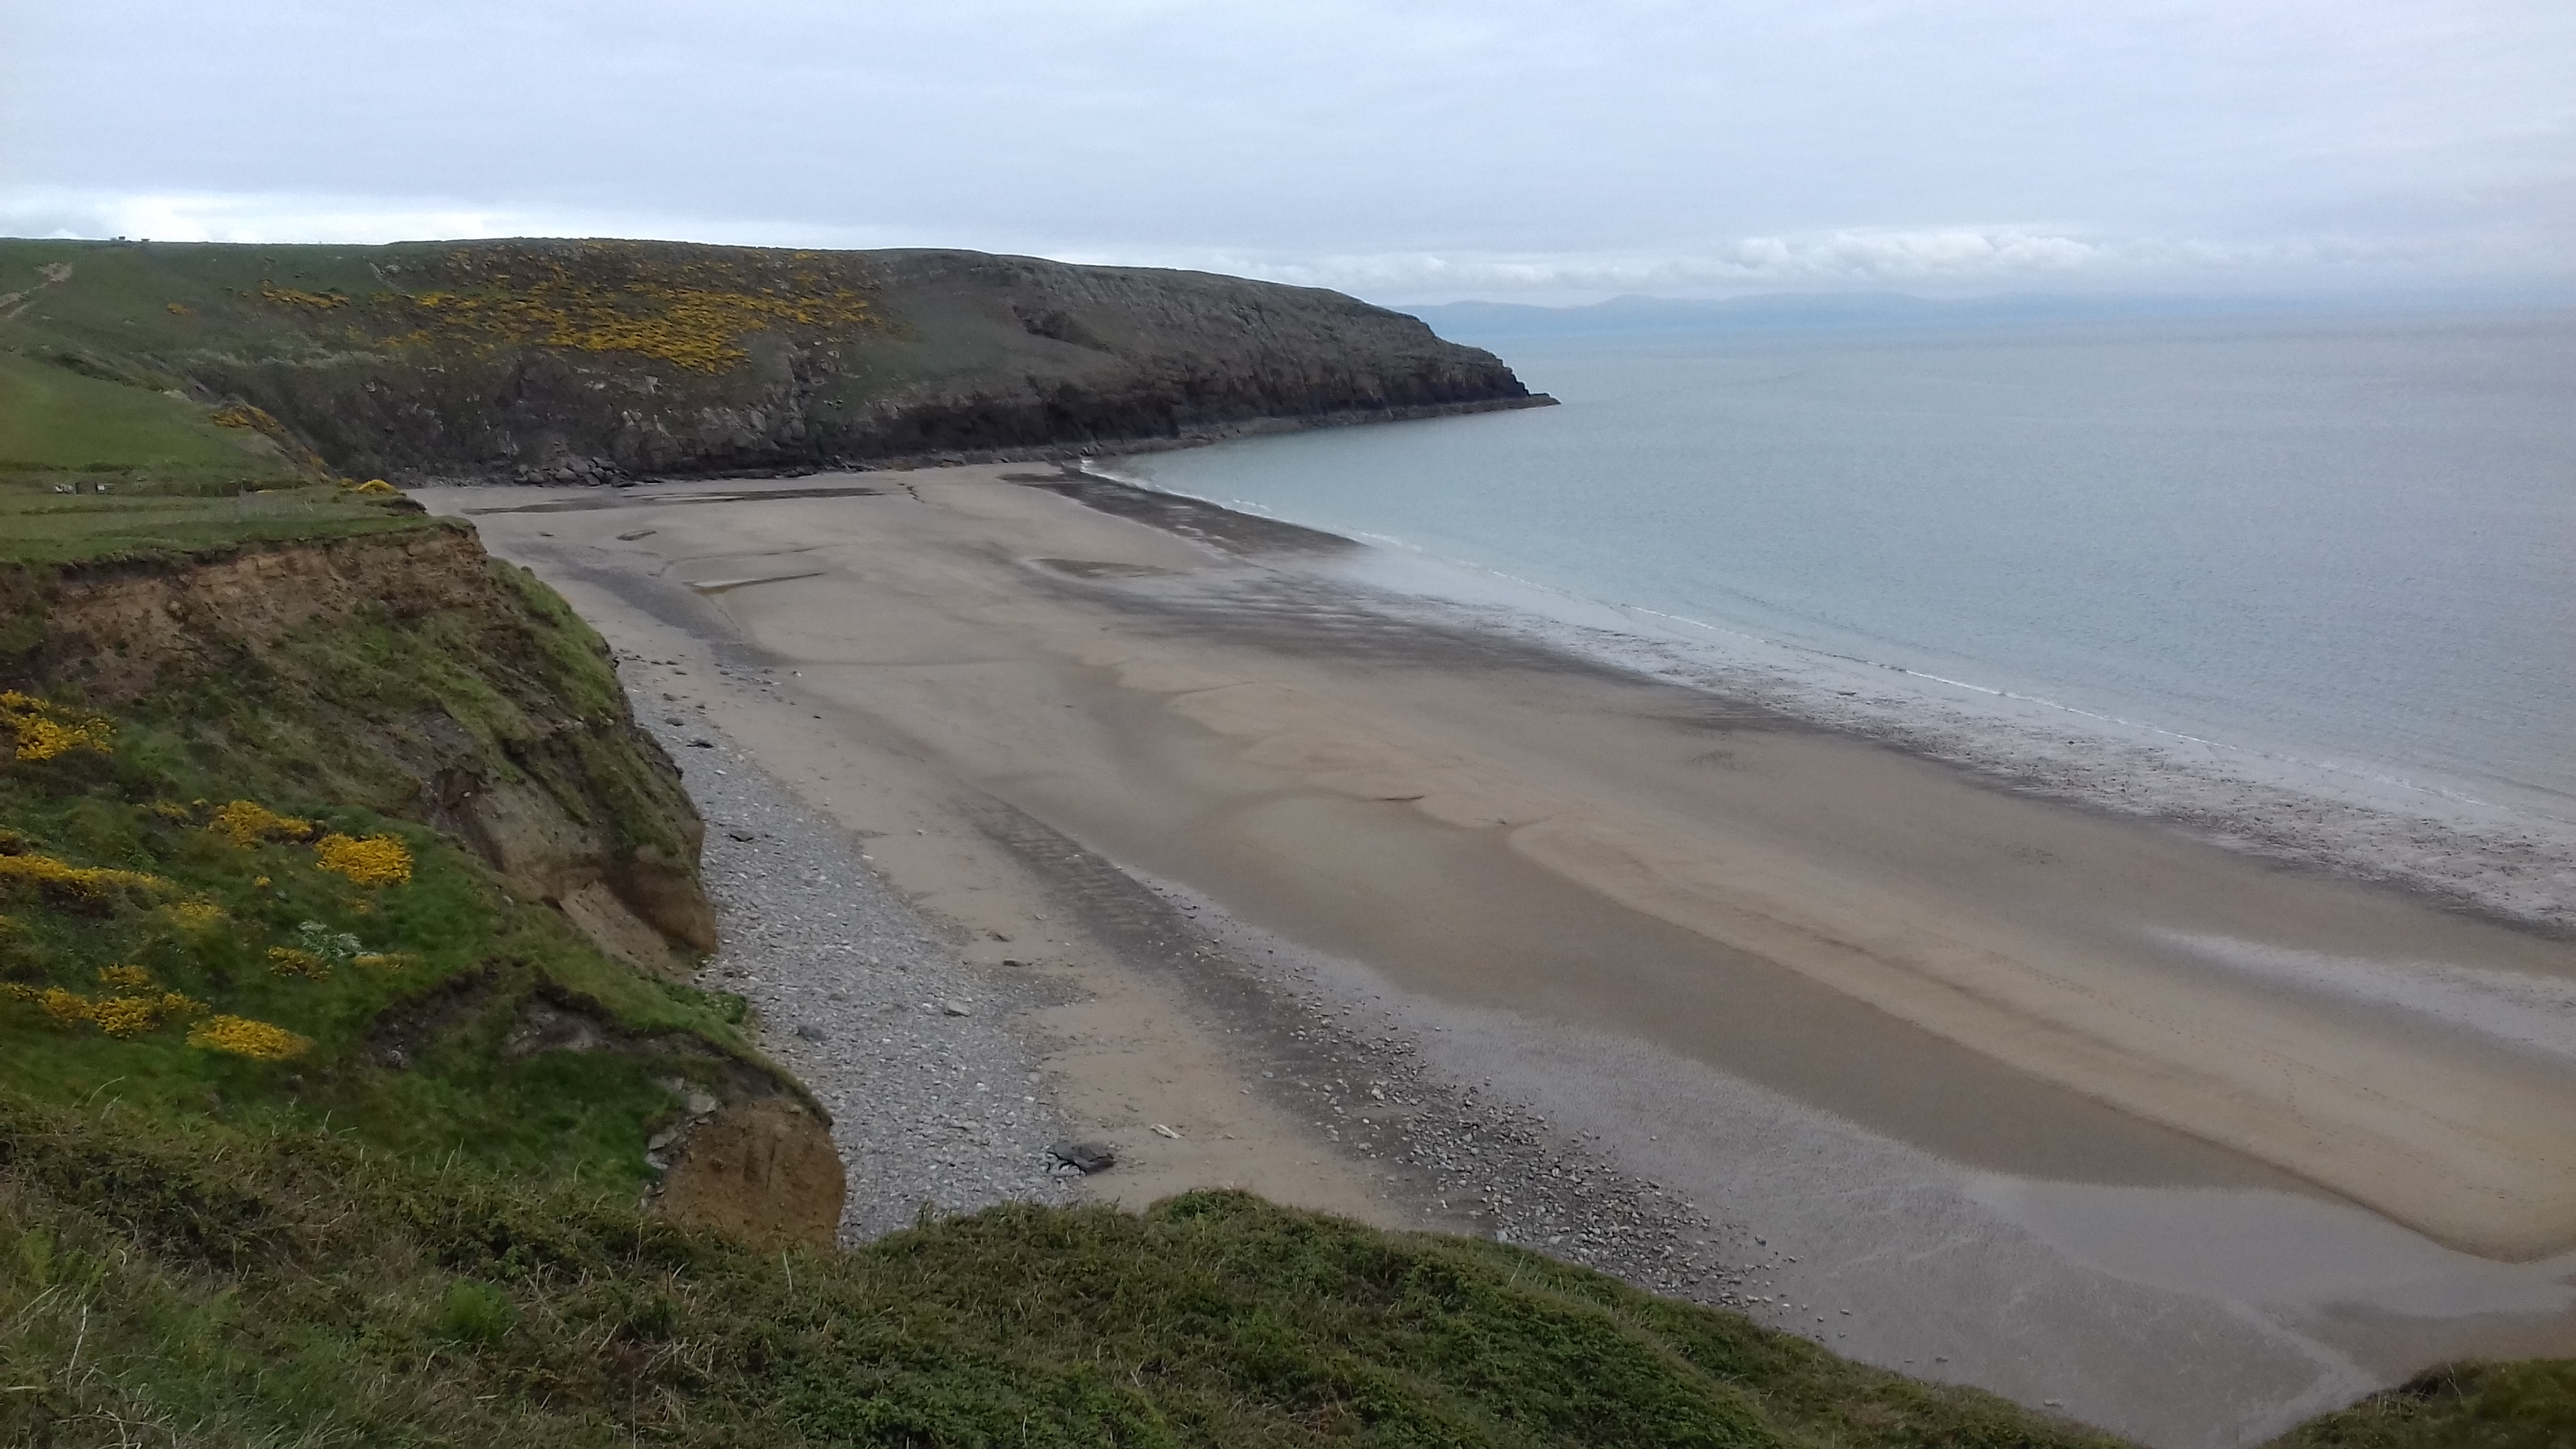 A view of the beach of Porth Ceiriad Abersoch Llŷn Peninsula